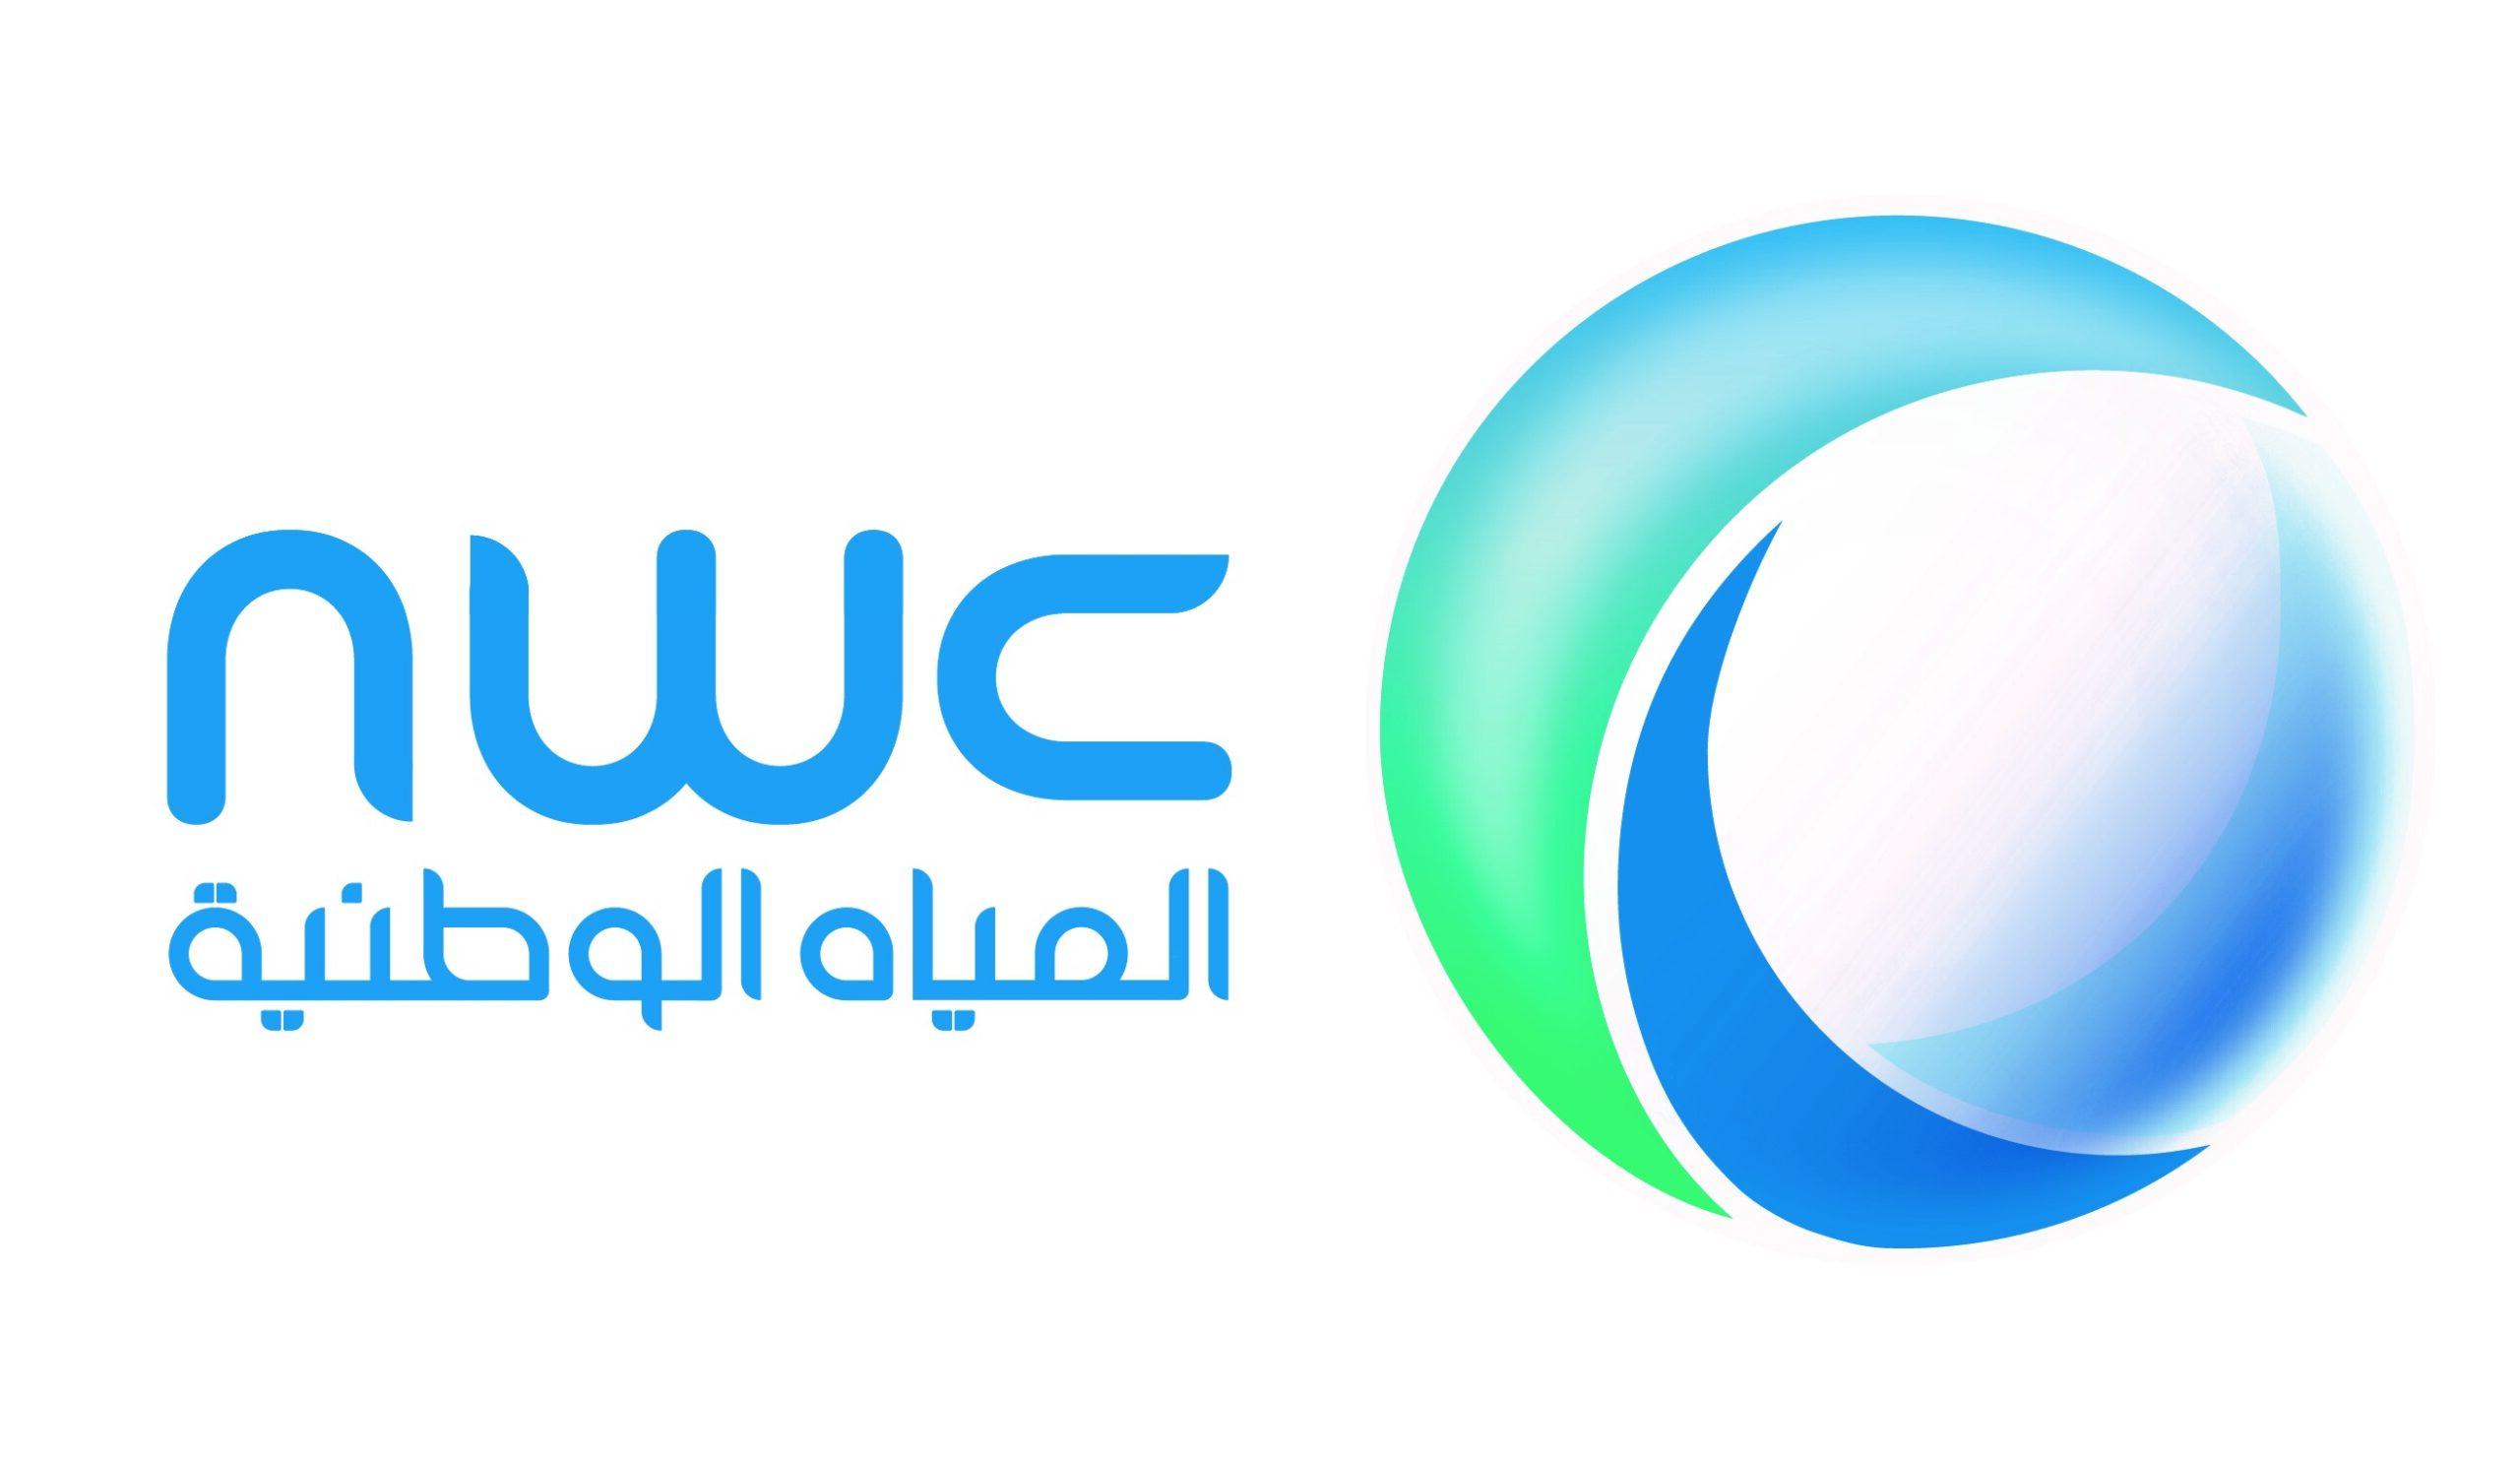 طريقة تسديد رسوم الصرف الصحي في المملكة العربية السعودية – موقع كيف